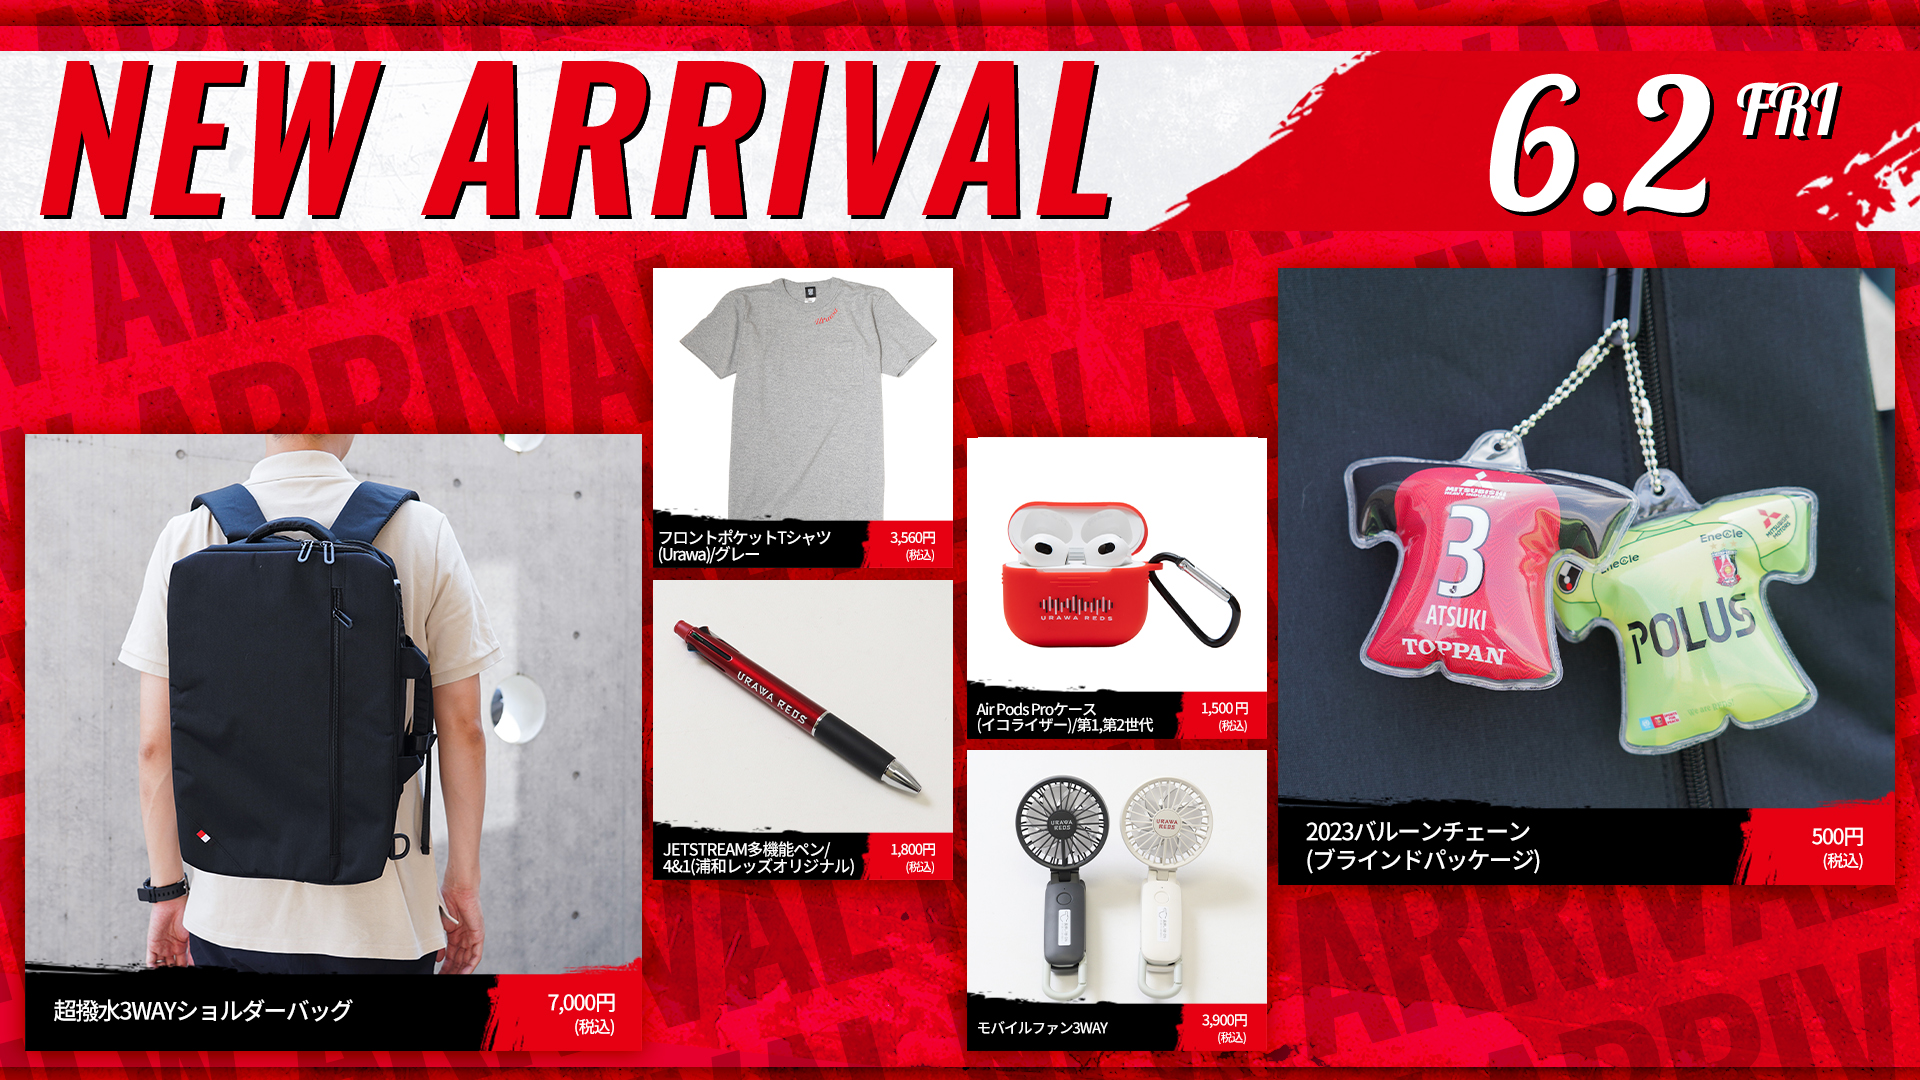 6/2(金)18時から 新商品発売! | URAWA RED DIAMONDS OFFICIAL WEBSITE